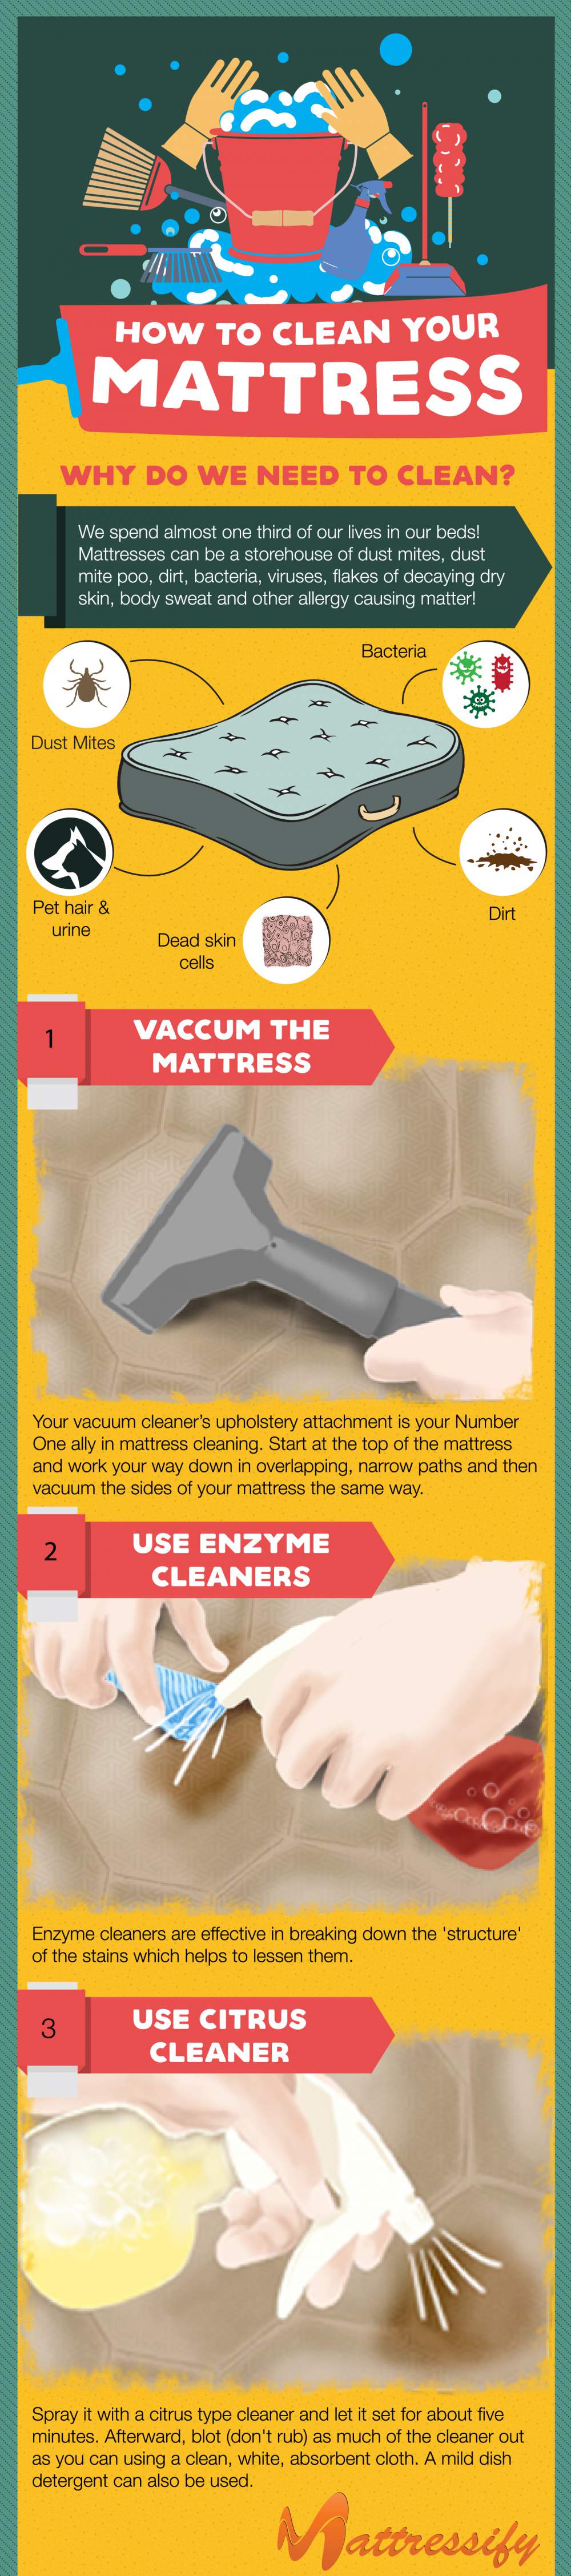 Ways to Clean Mattress